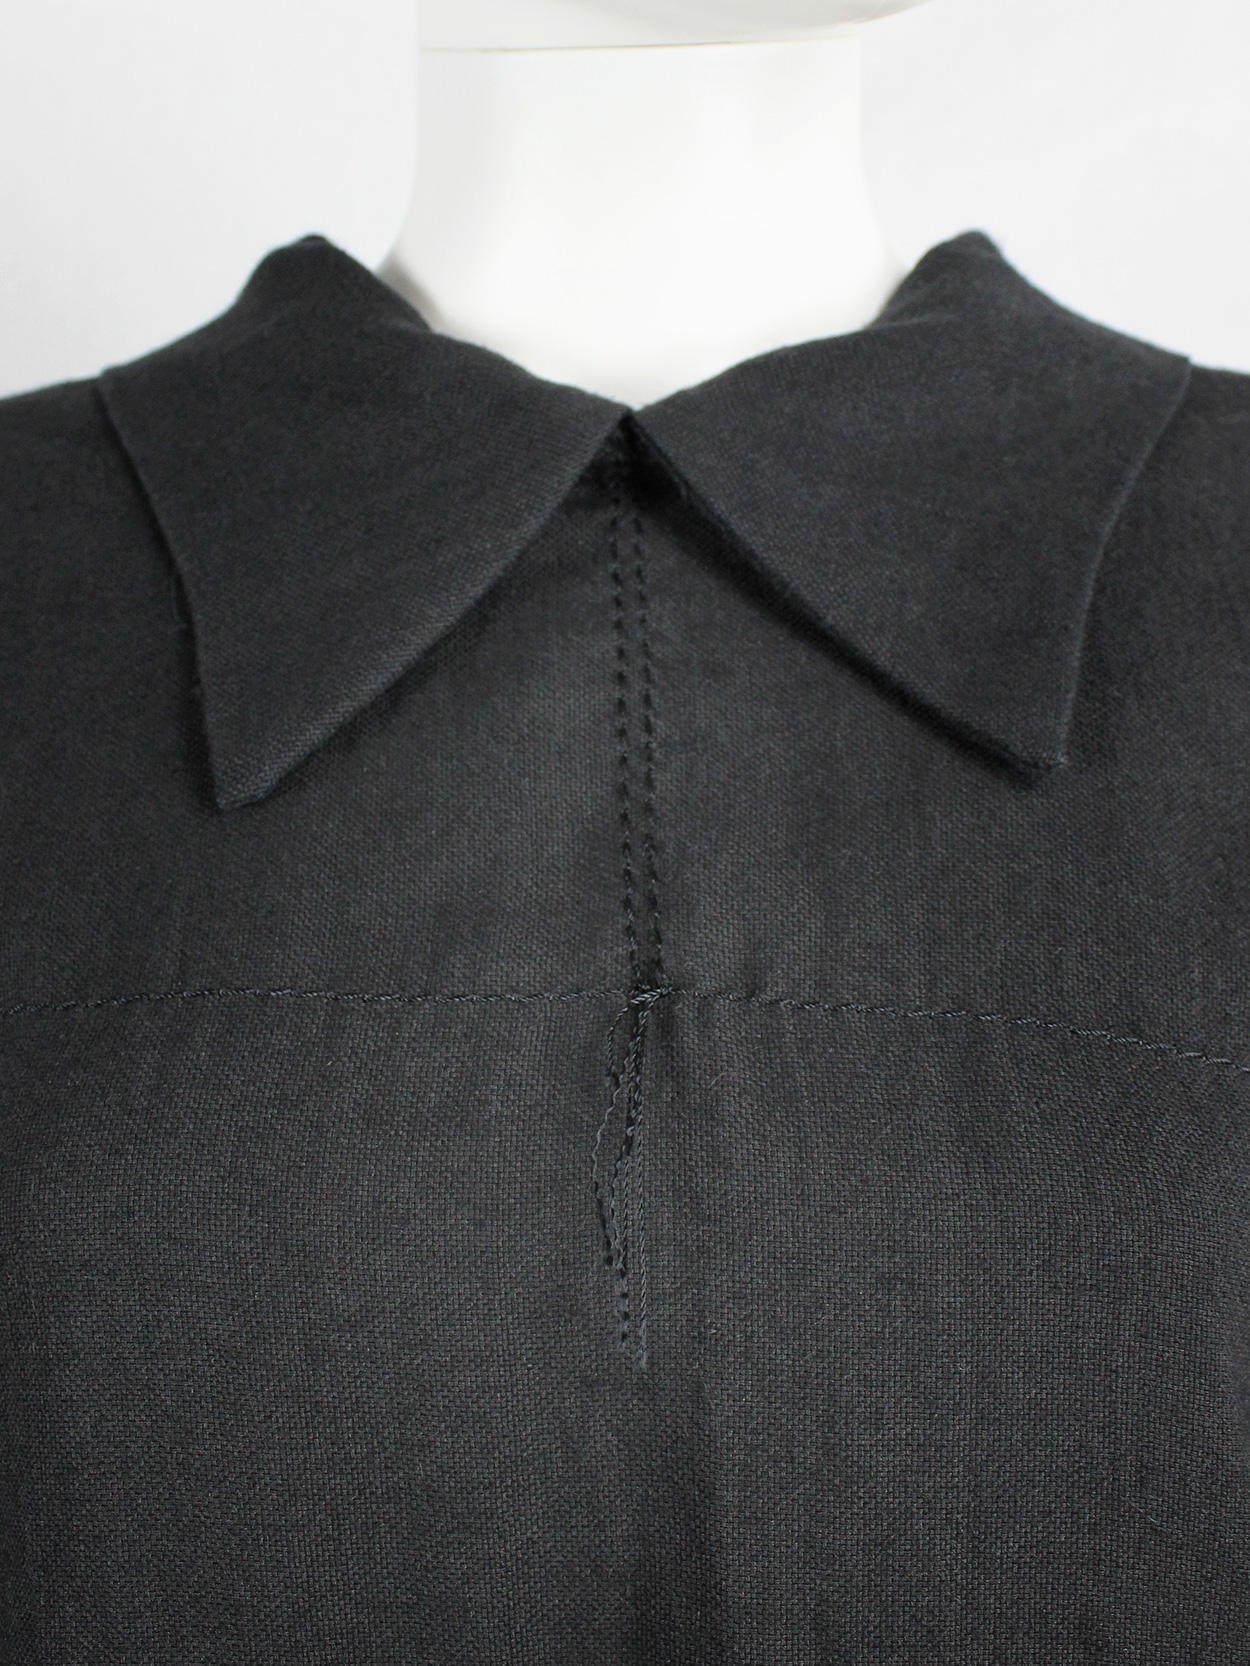 Maison Martin Margiela black jacket reproduced from a doll’s wardrobe ...